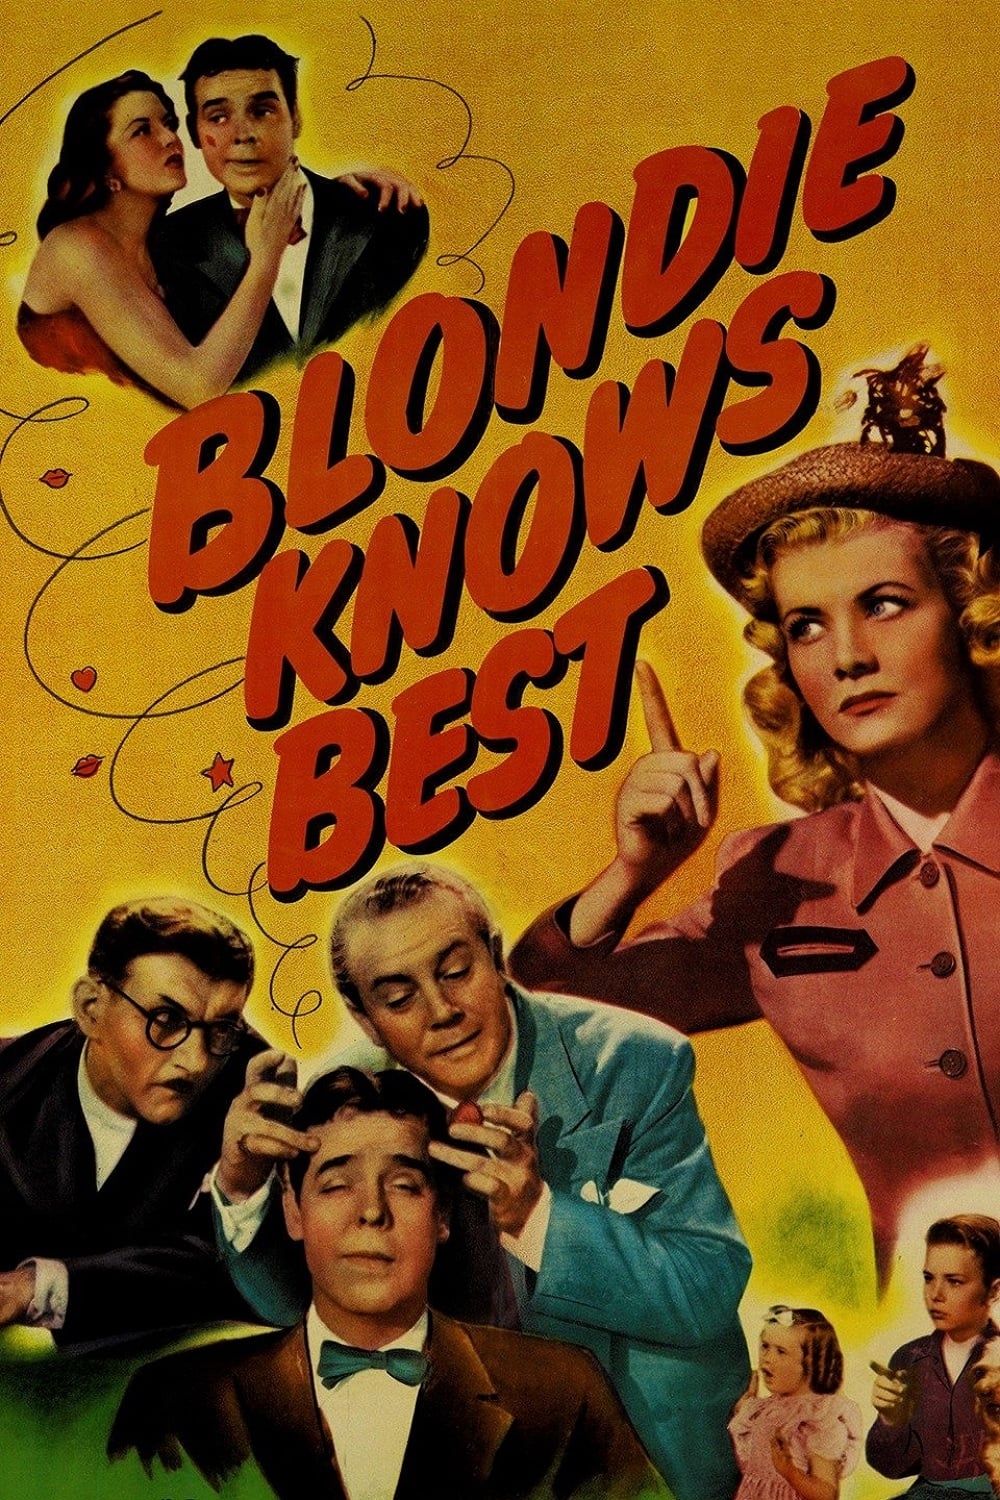 Blondie Knows Best (1946)